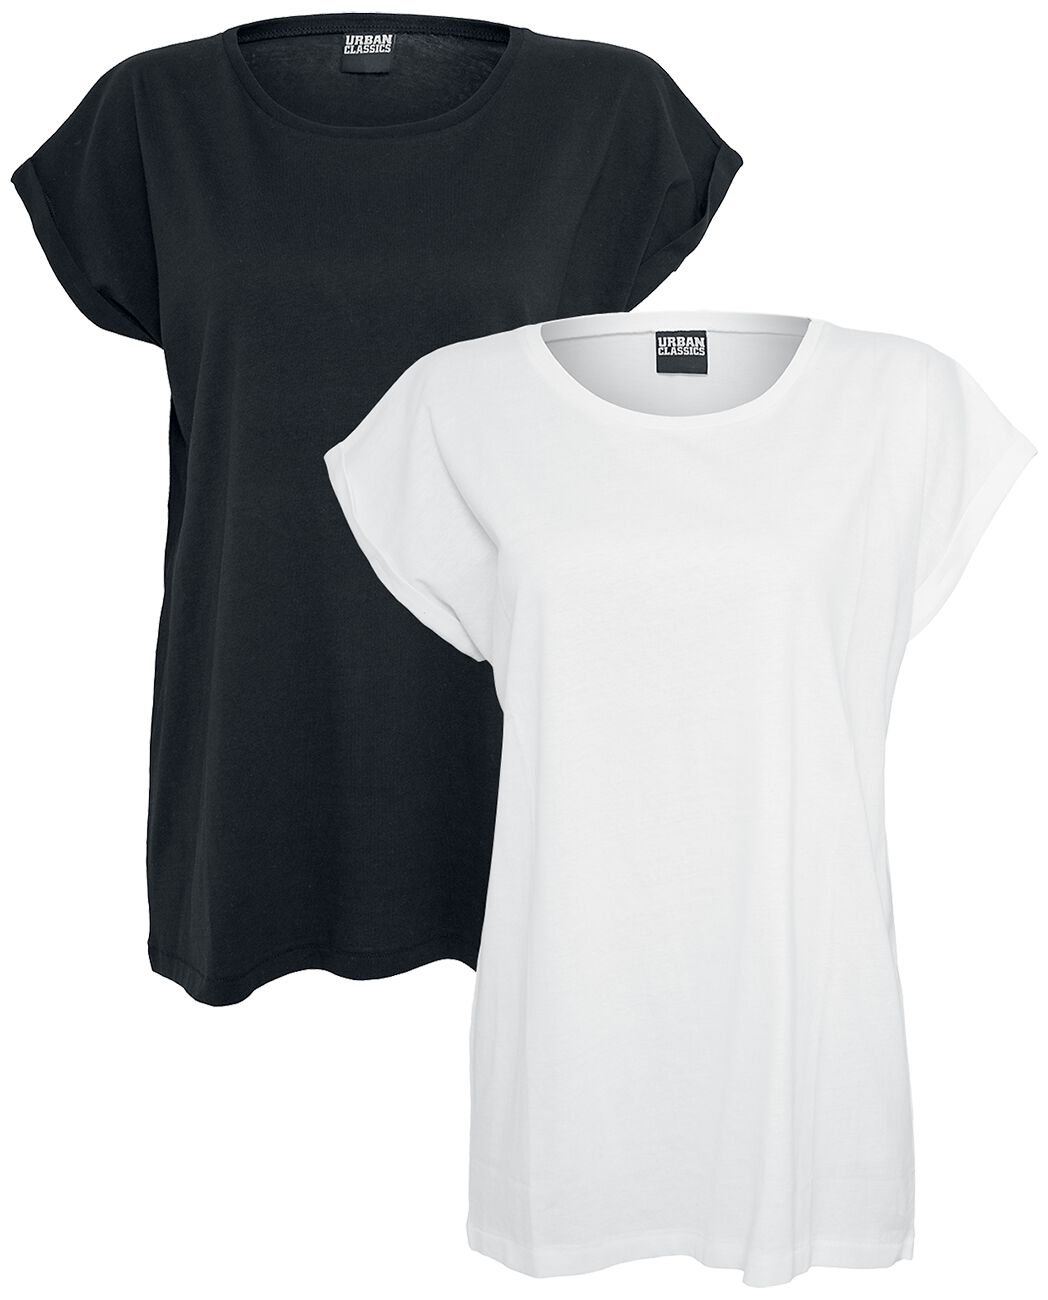 Urban Classics T-Shirt - Ladies Extended Shoulder Tee Double Pack - XS bis XL - für Damen - Größe XL - schwarz/weiß